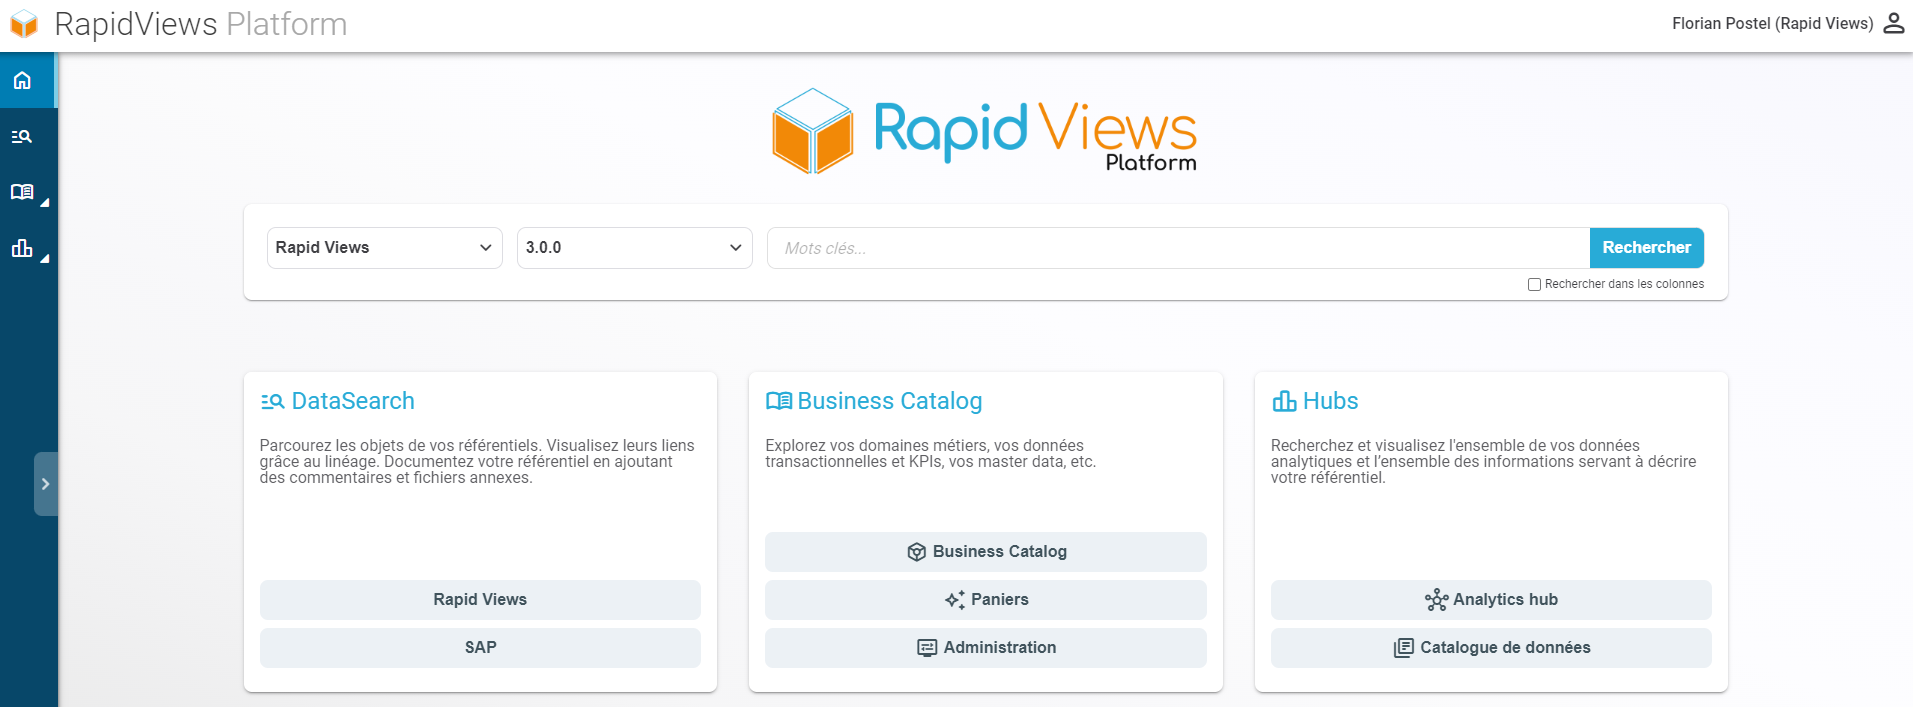 Page d'accueil de la plateforme RapidViews version 5.1